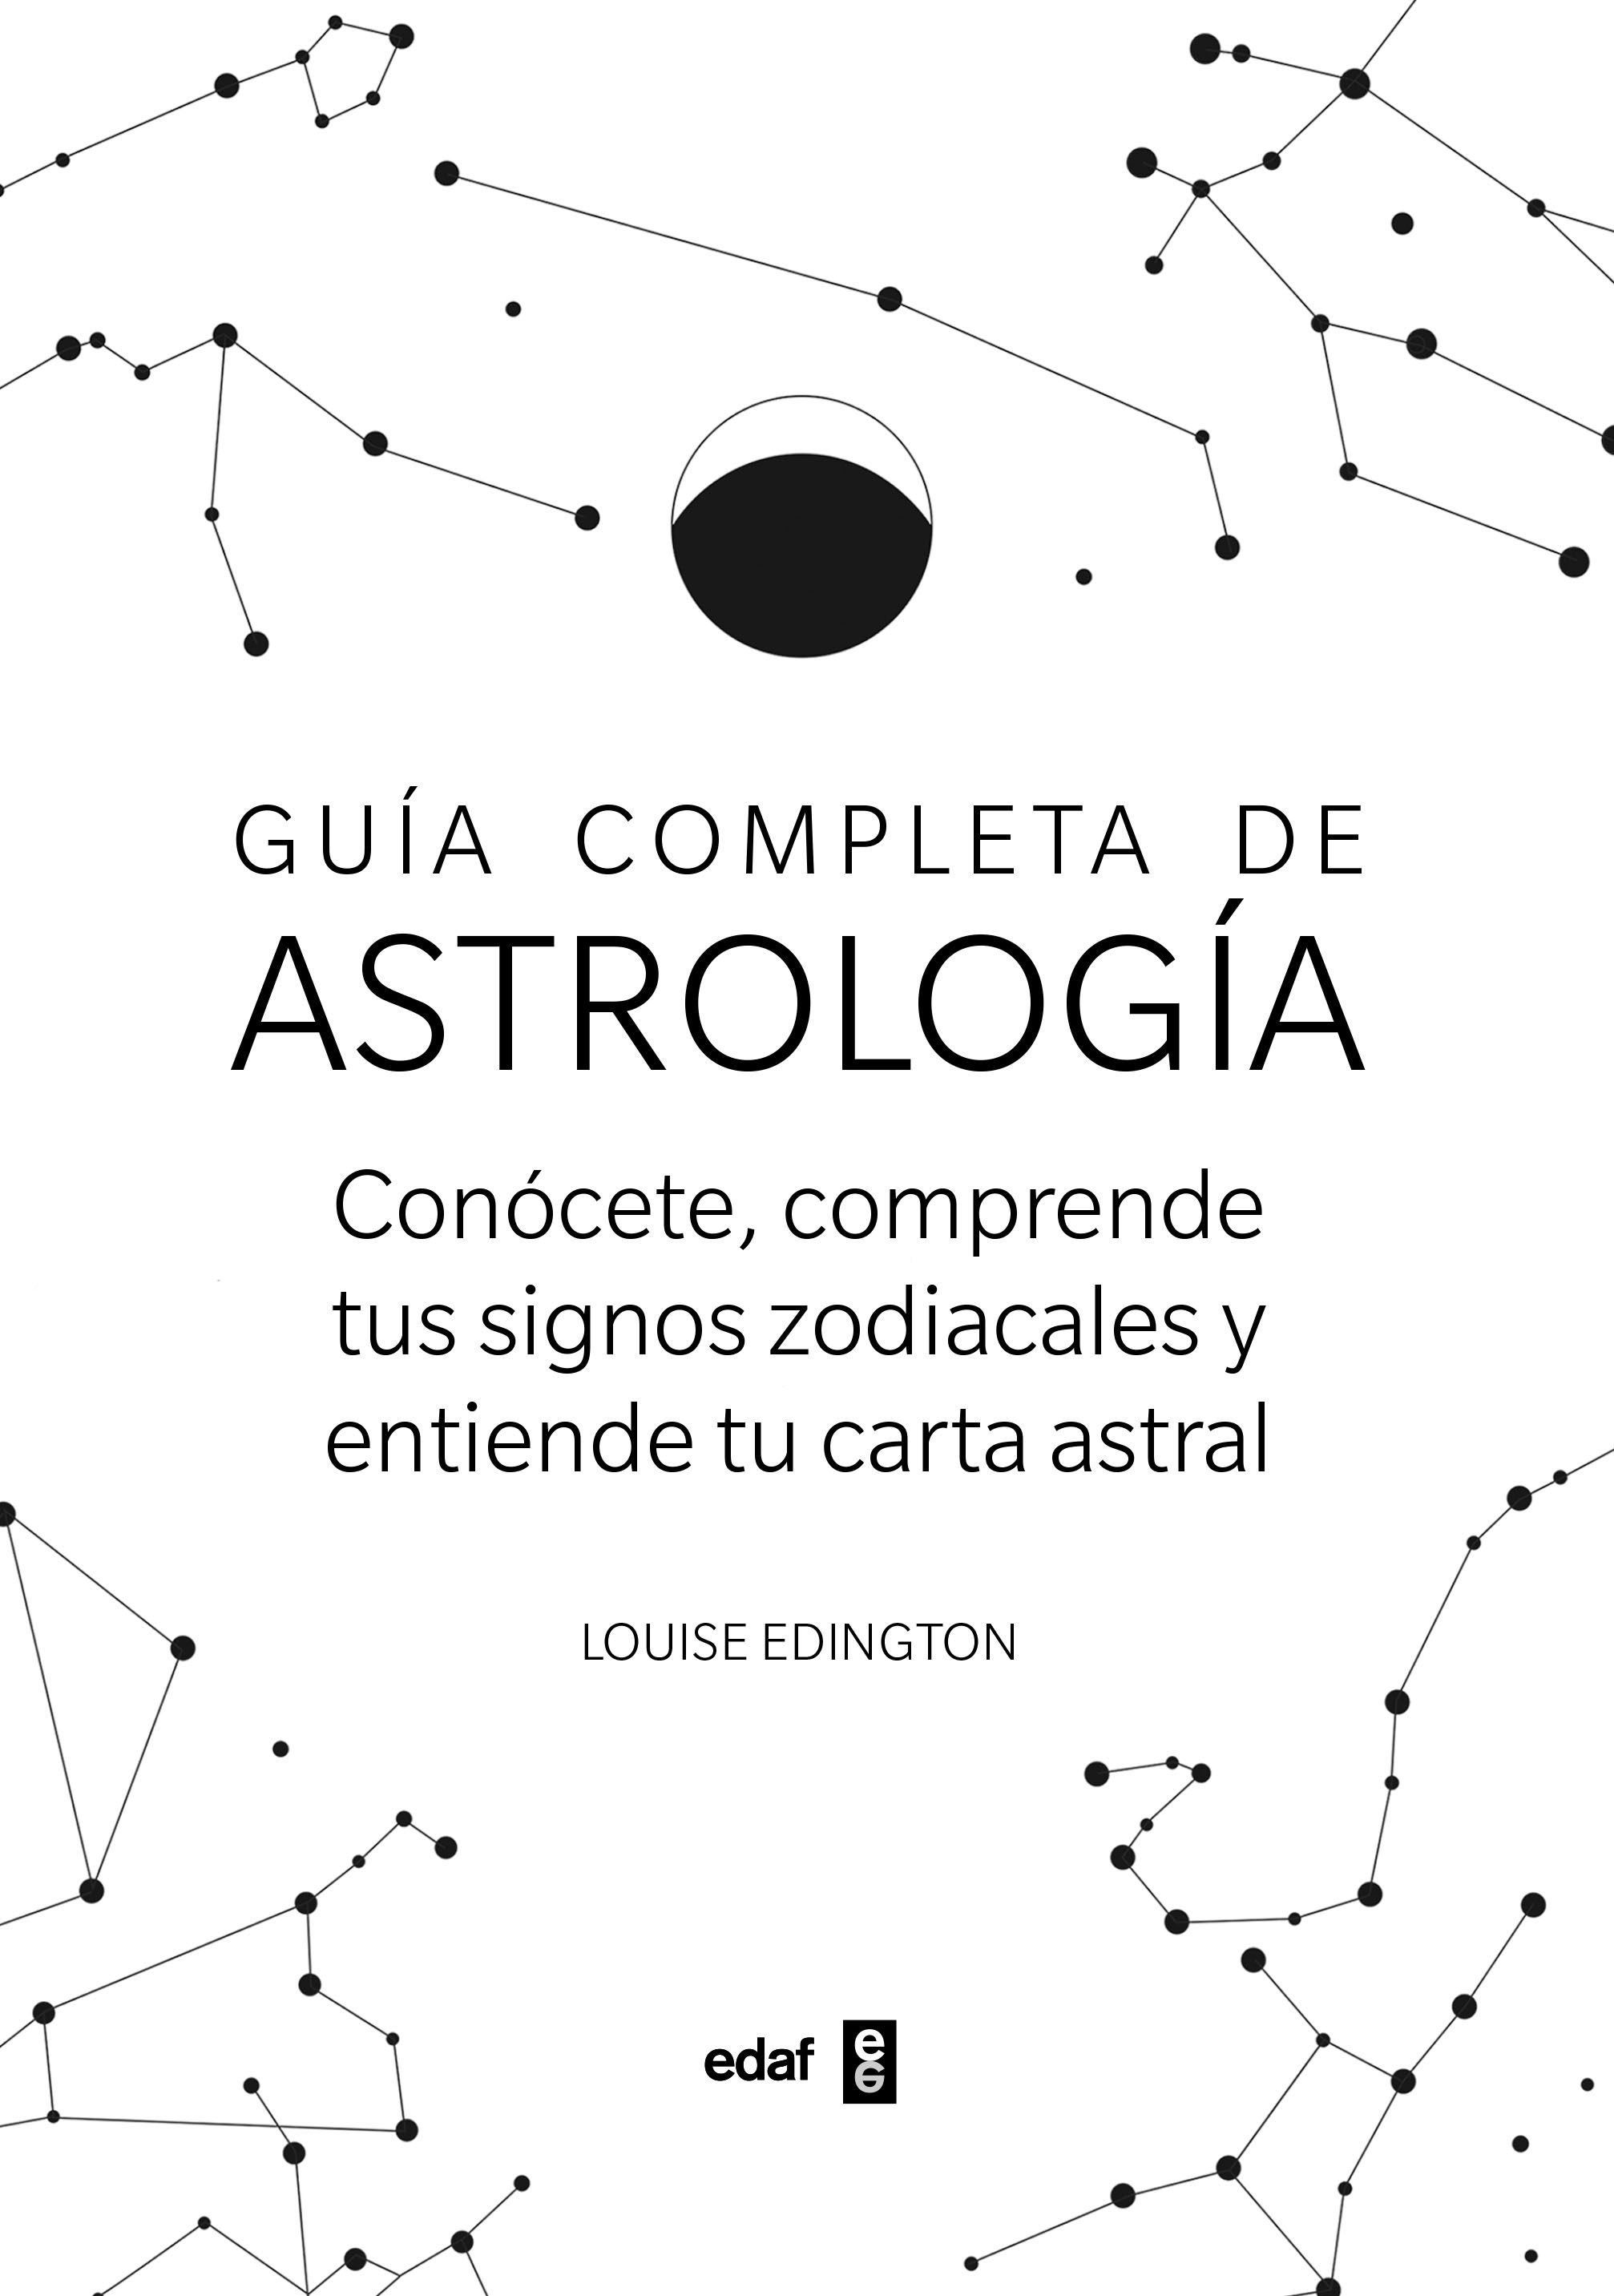 Guía completa de Astrología   «Conócete, sorprende tus signos zodiacales y entiende tu carta astra»